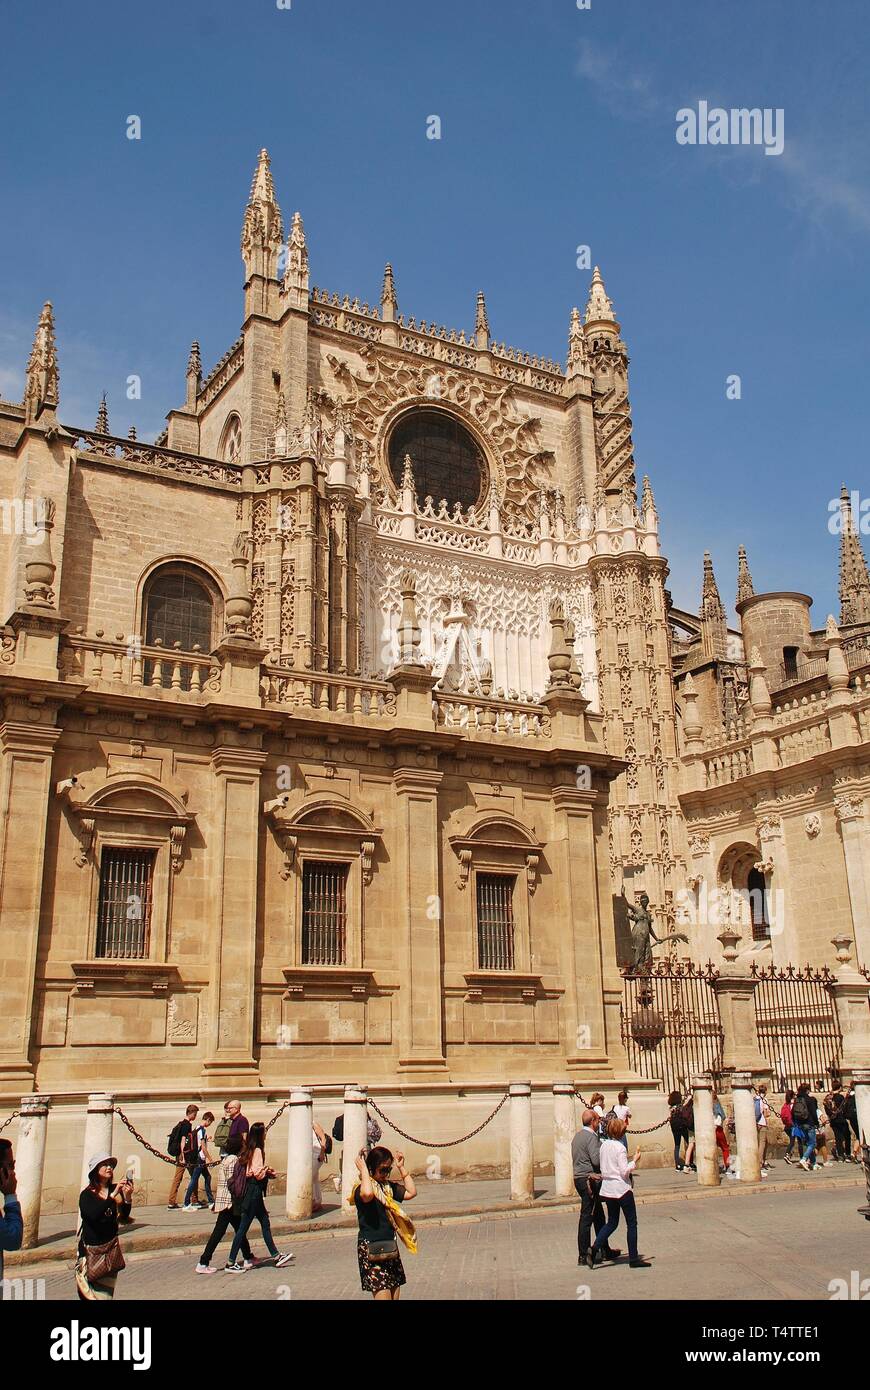 La cathédrale de Santa Maria de la Sede à Séville, Espagne, le 2 avril 2019. Commencé en 1402, c'est la plus grande cathédrale gothique du monde. Banque D'Images